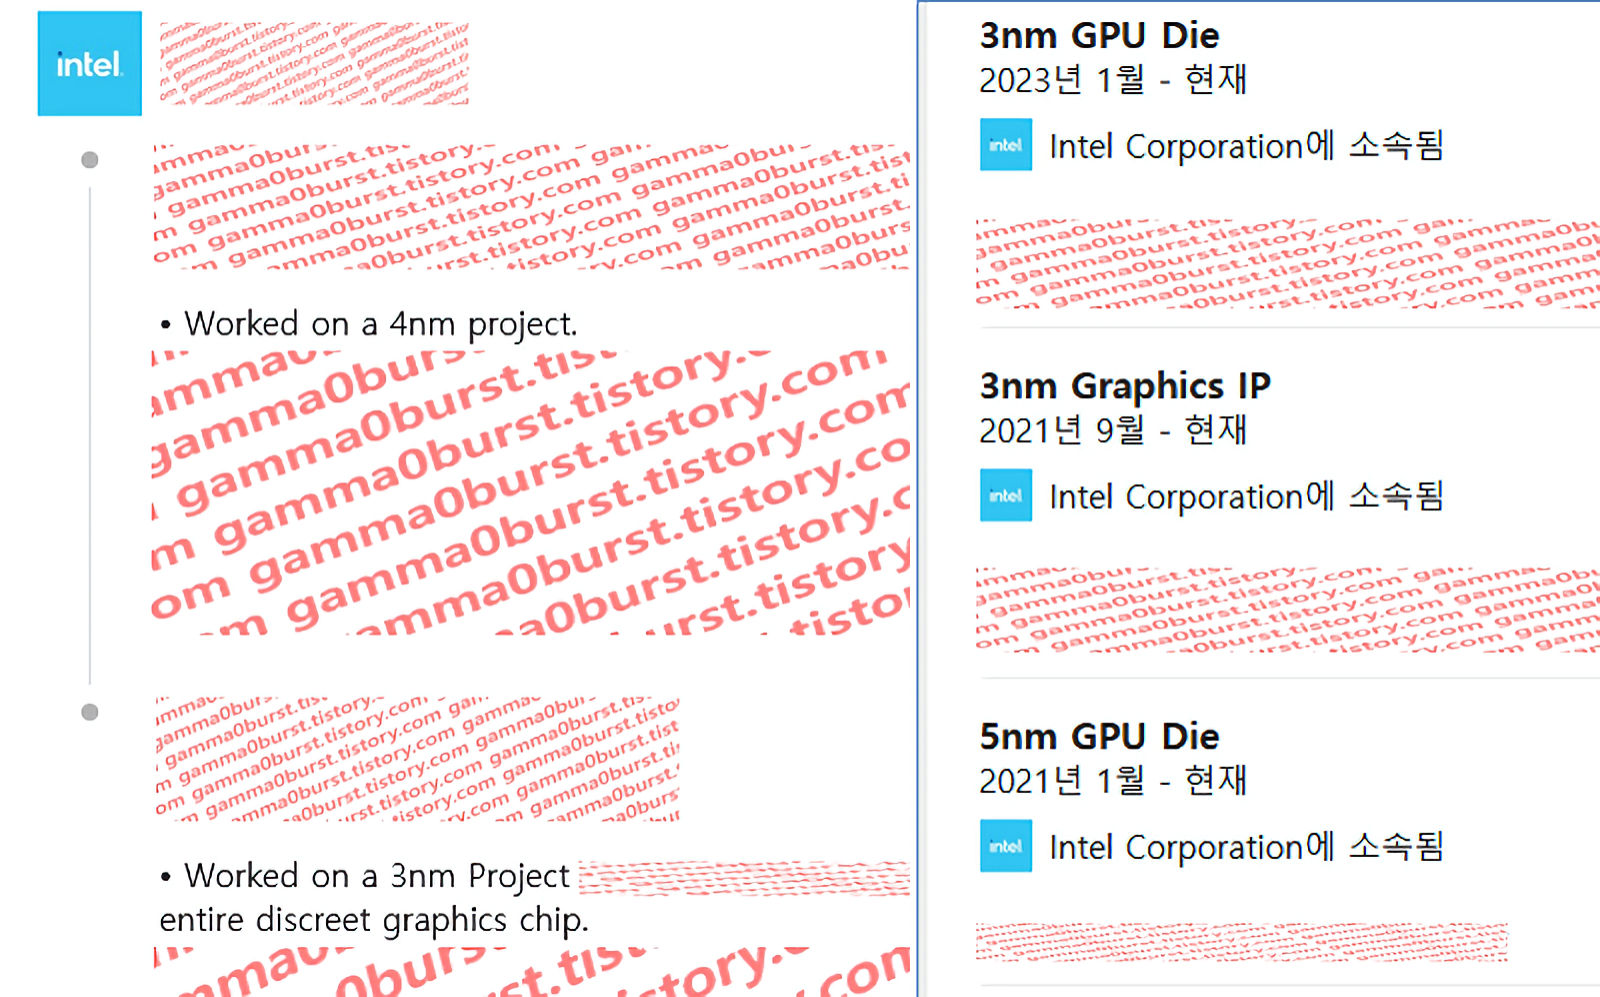 Informacje z profili pracowników Intela